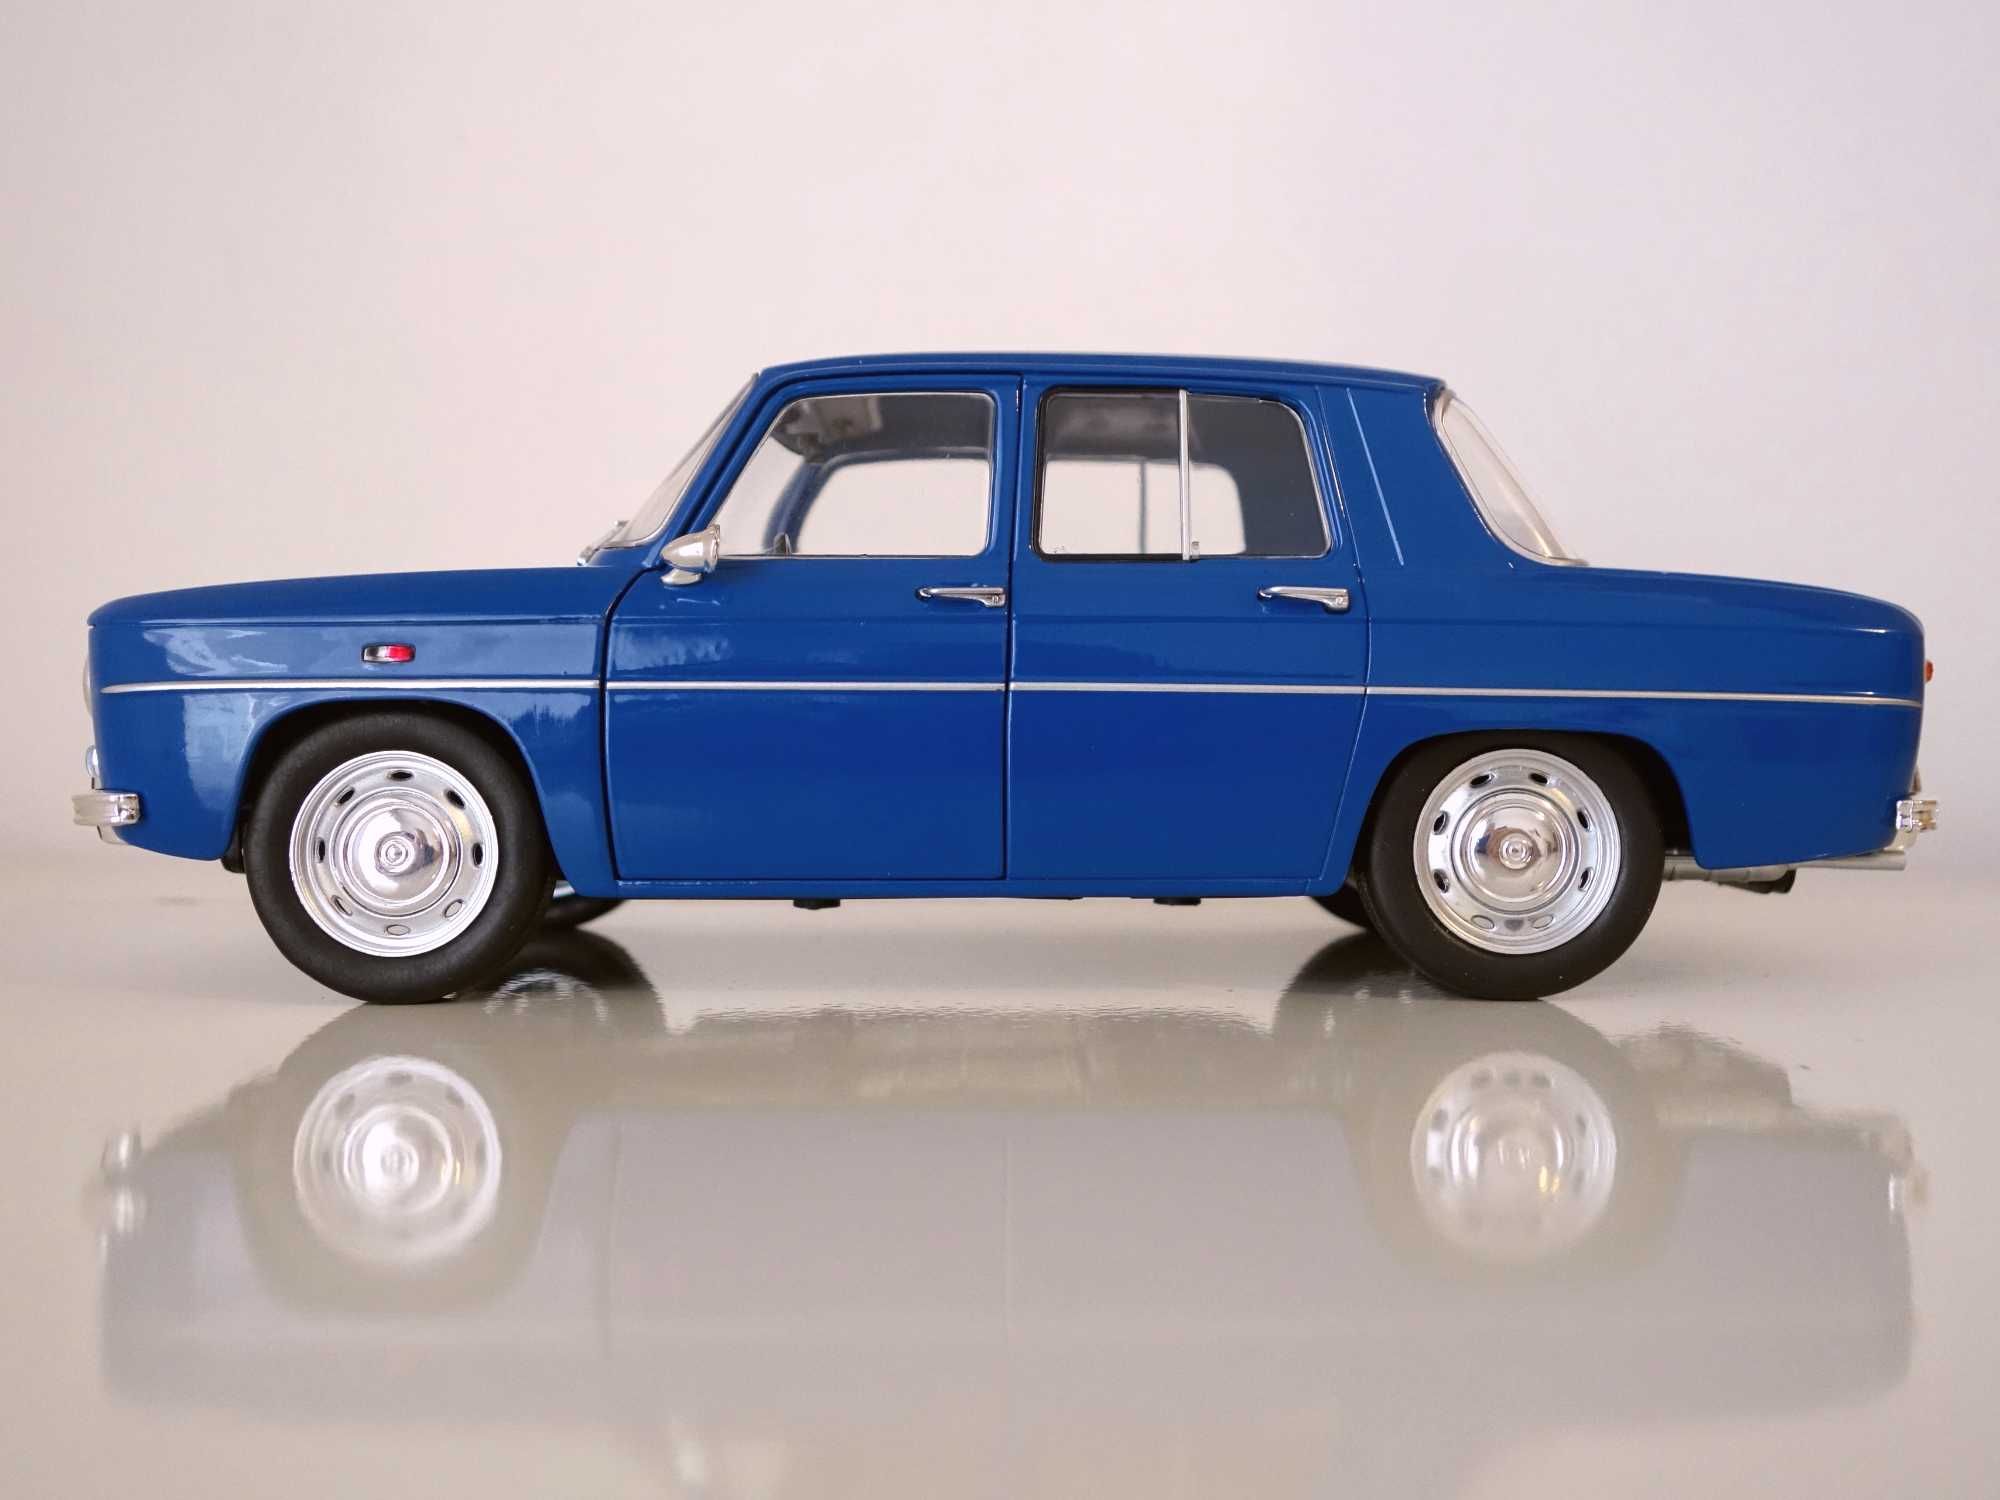 Miniatura de coleção Renault 8 Gordini, escala 1:18 - Solido